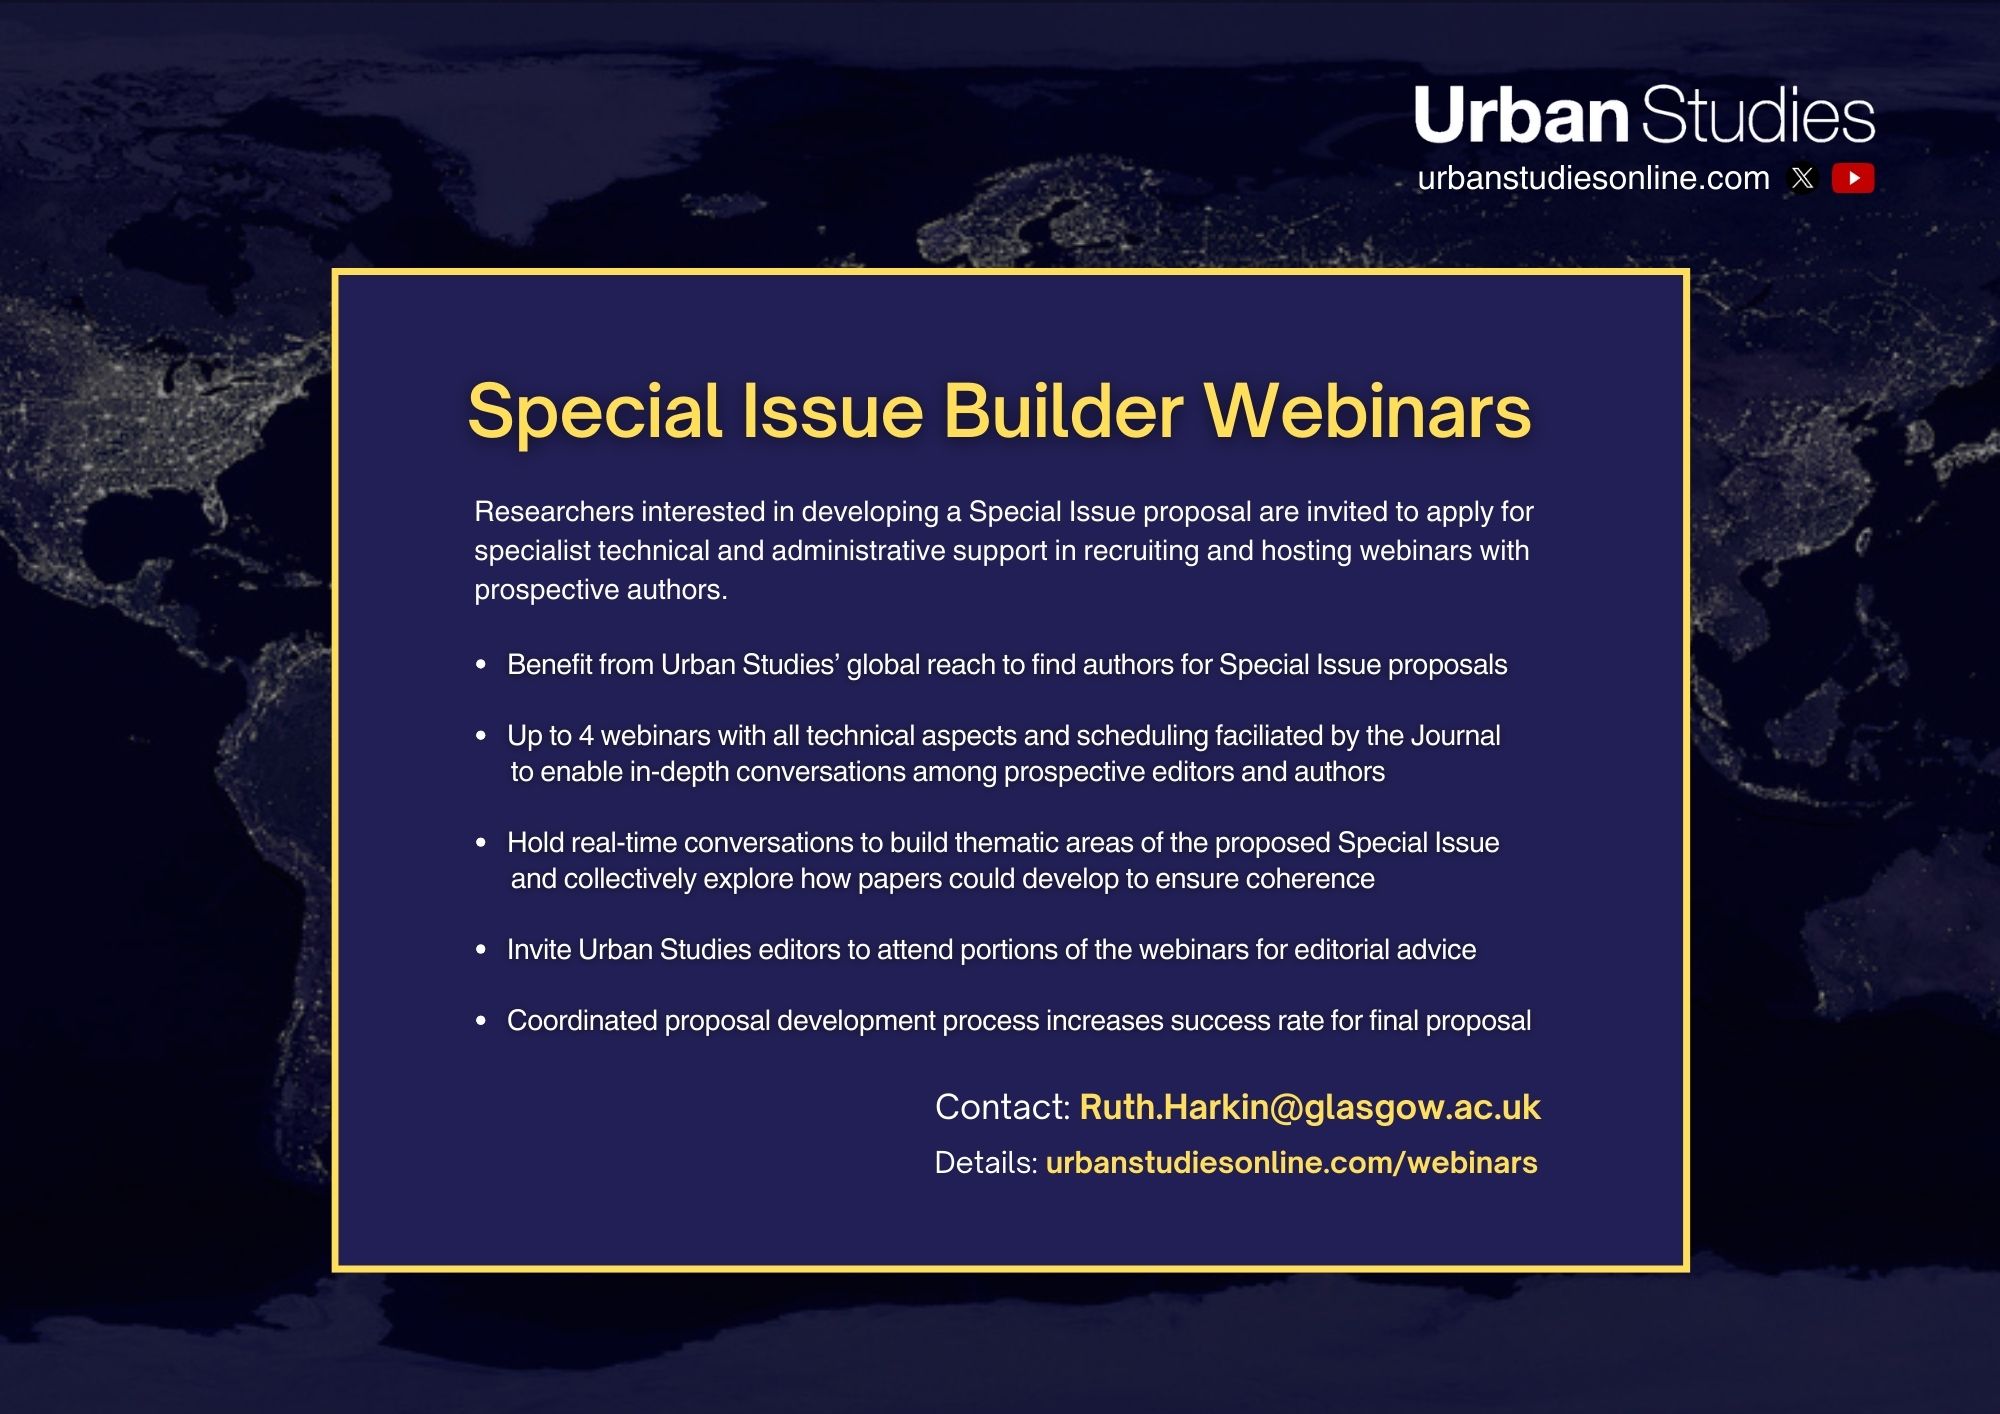 Special Issue Builder Webinars poster